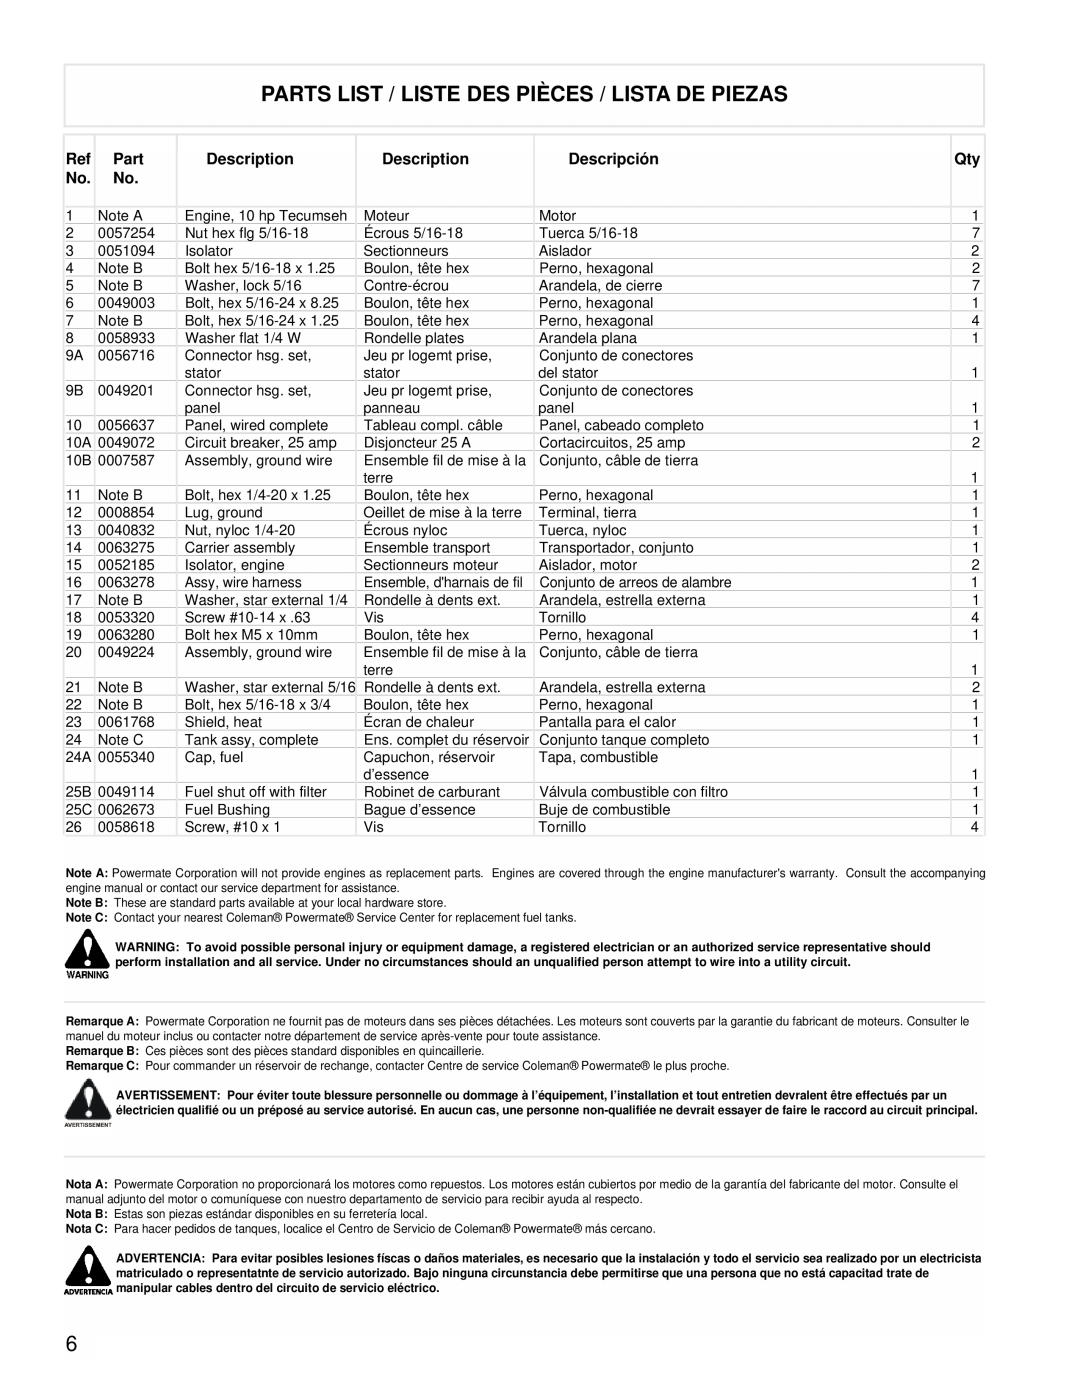 Coleman PMA525302.02 manual Parts List / Liste Des Pièces / Lista De Piezas, Description, Descripción 